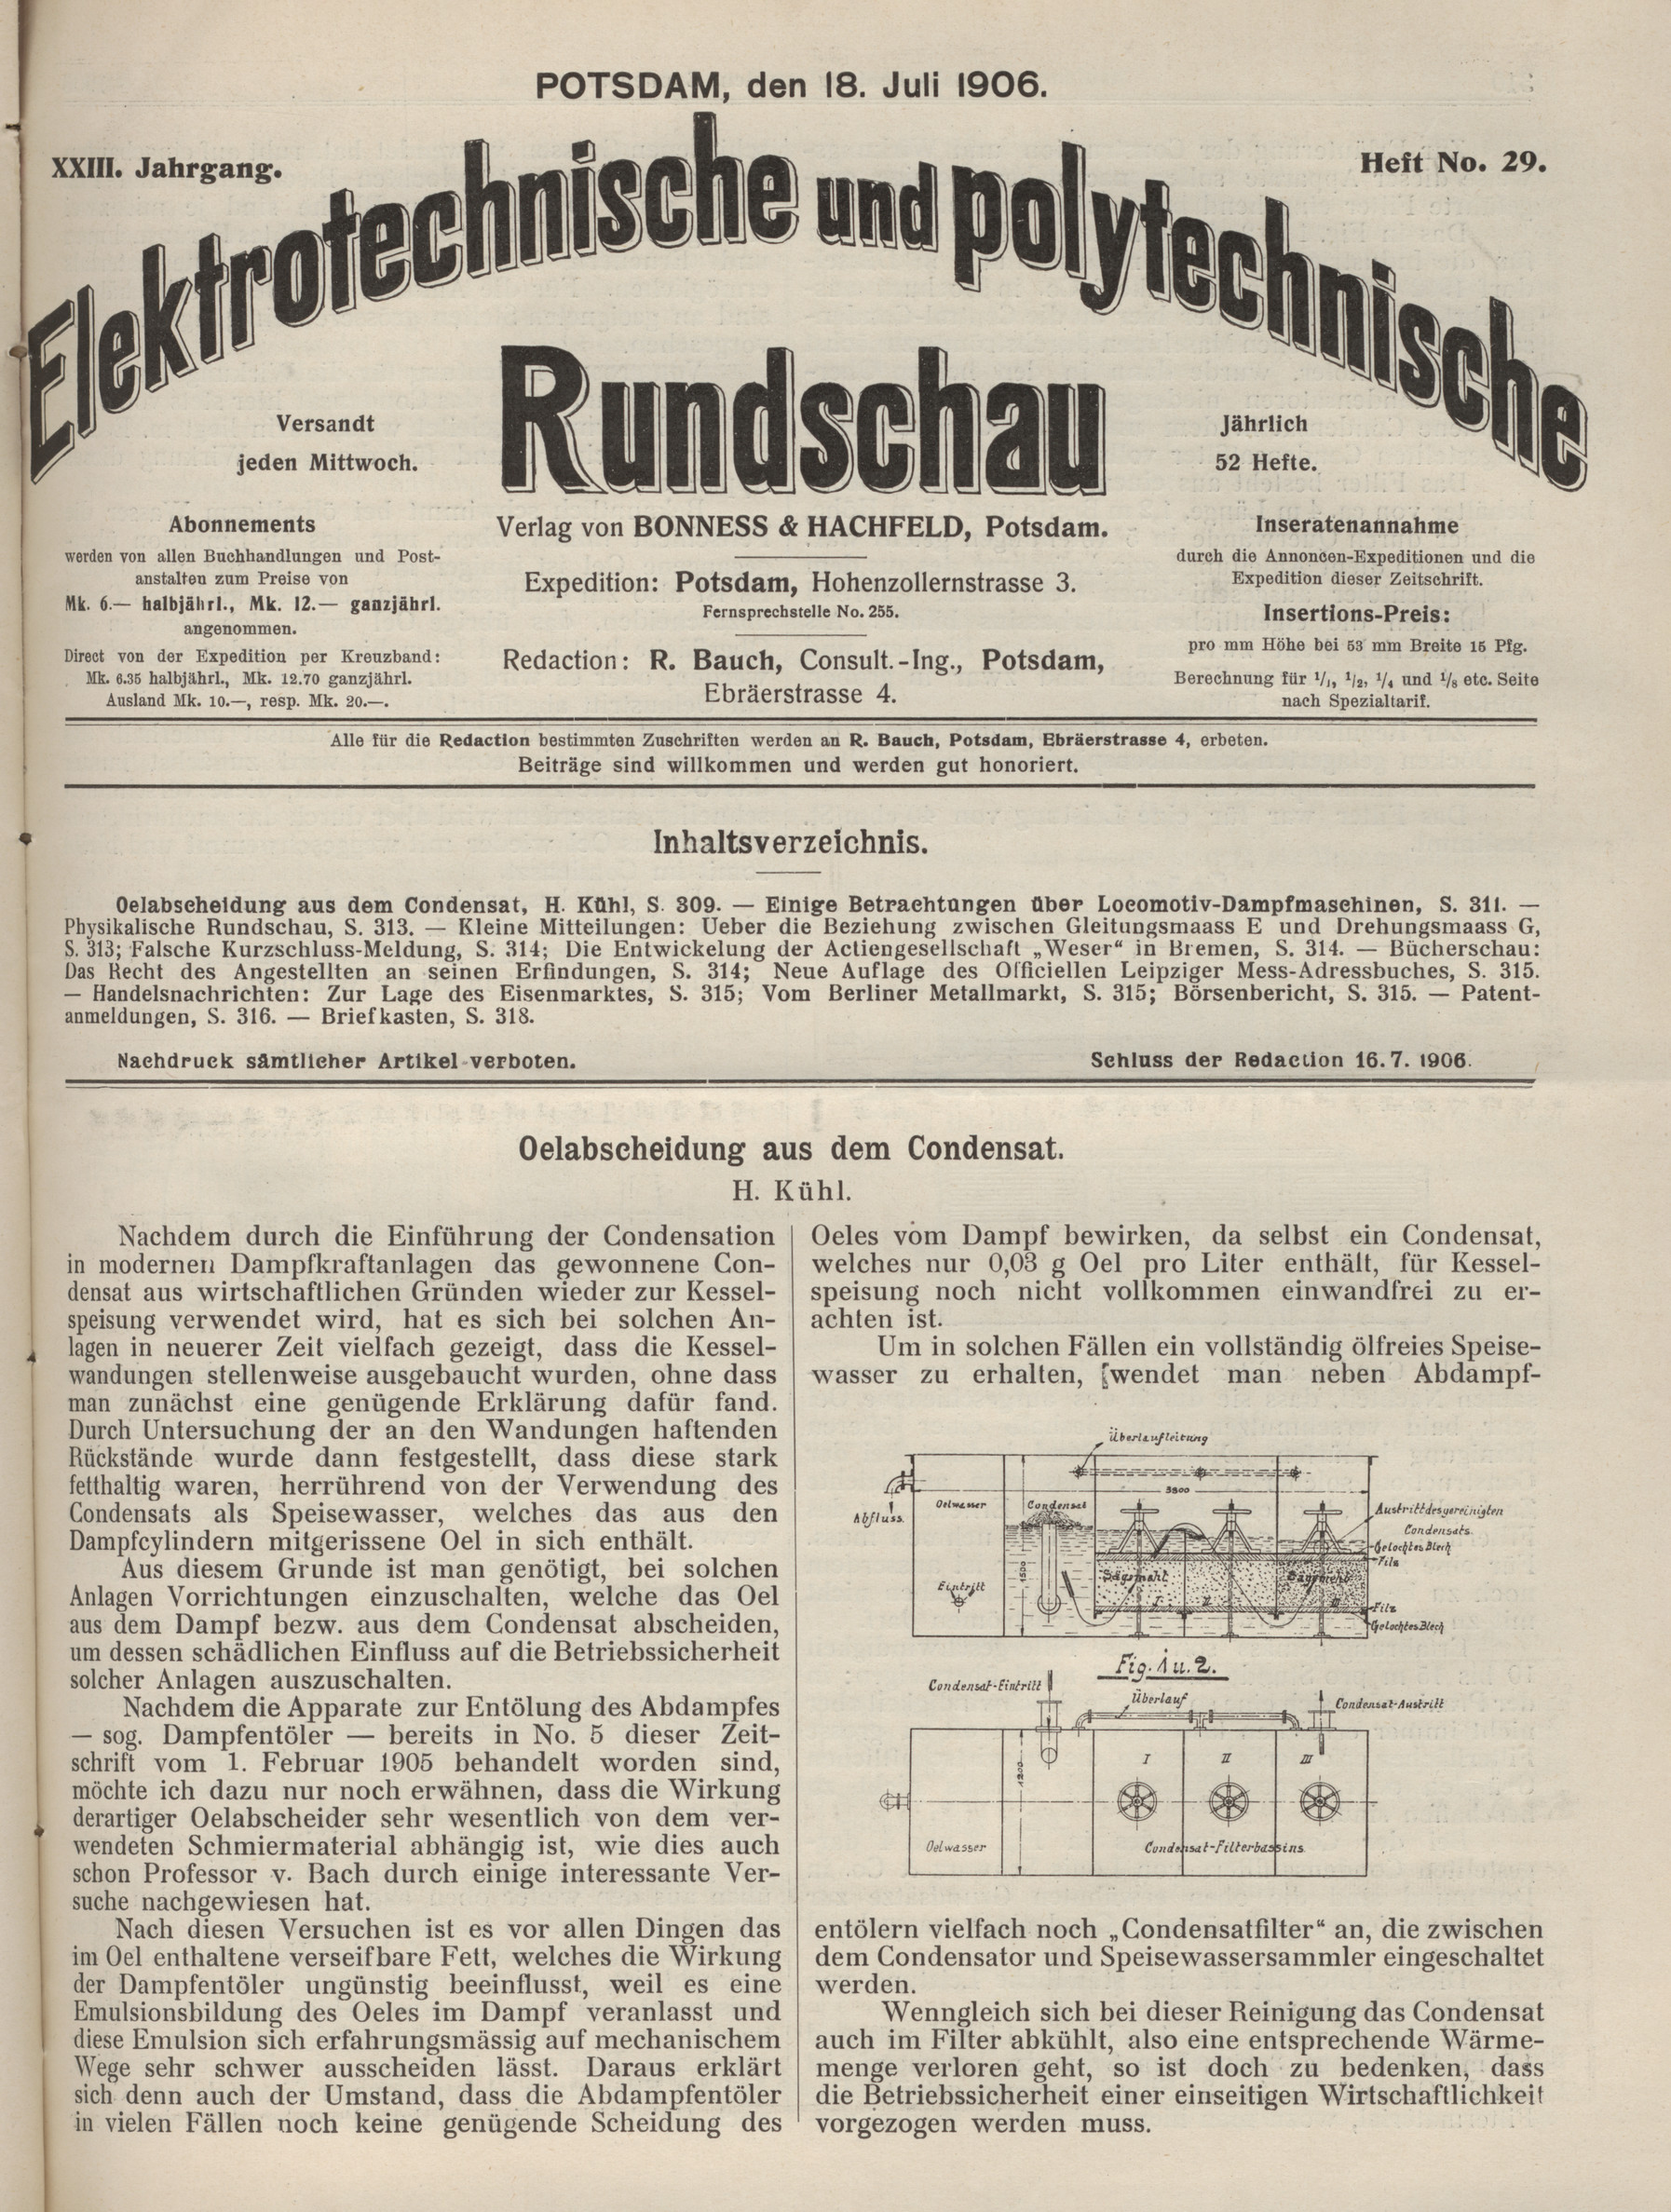 Elektrotechnische und polytechnische Rundschau, XXIII. Jahrgang, Heft No. 29